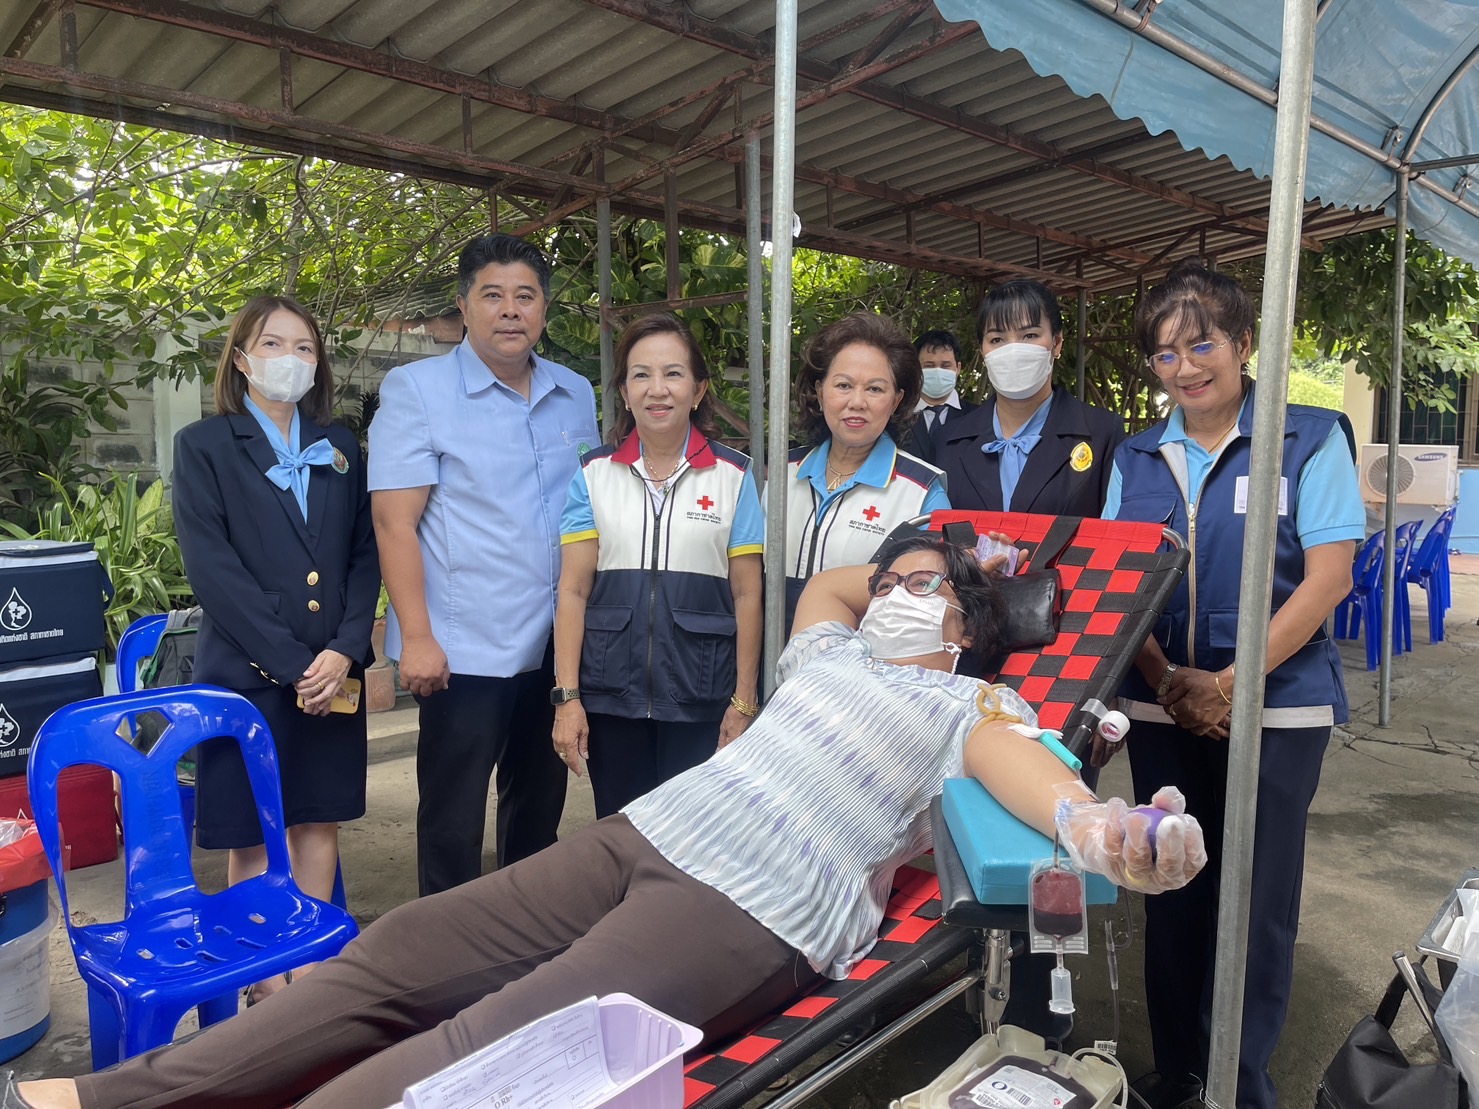 สิงห์บุรี-รับบริจาคโลหิต ณ โรงพยาบาลส่งเสริมสุขภาพตำบลเฉลิมพระเกียรติ 60 พรรษา